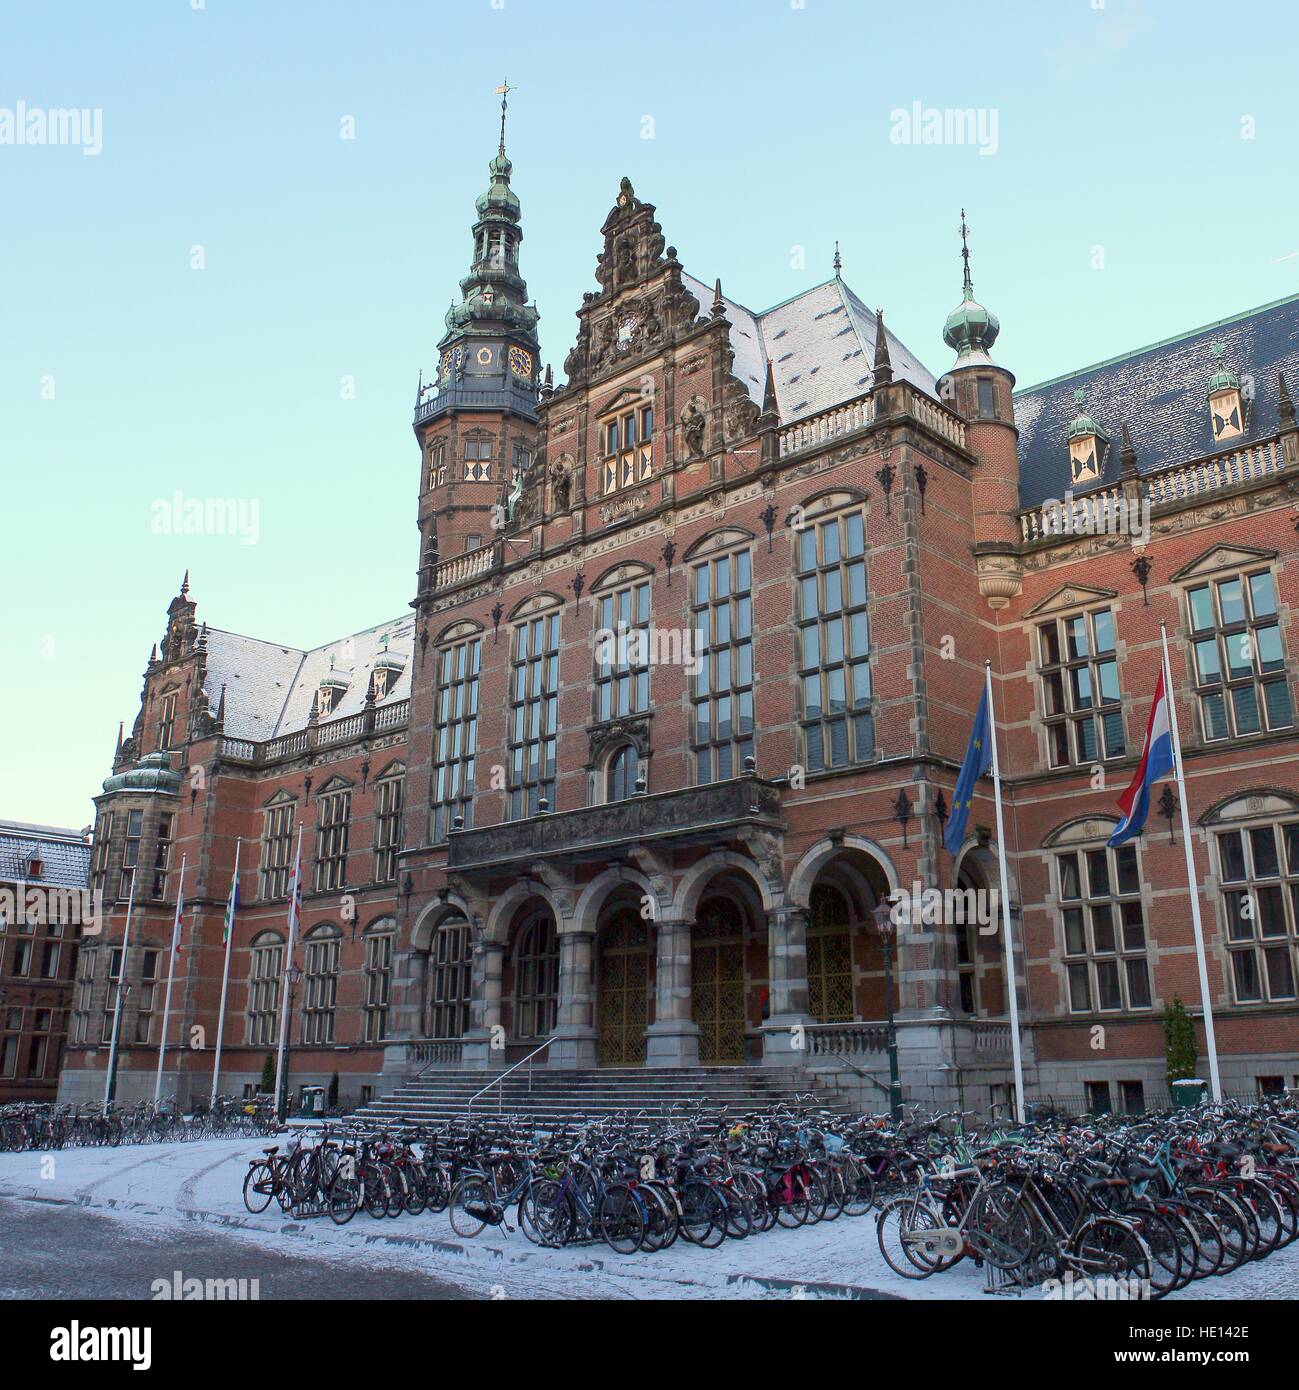 Bâtiment de l'académie, Groningen, Pays-Bas. Rijksuniversiteit Groningen - Université de Groningue (tapis). Croix de 2 images Banque D'Images